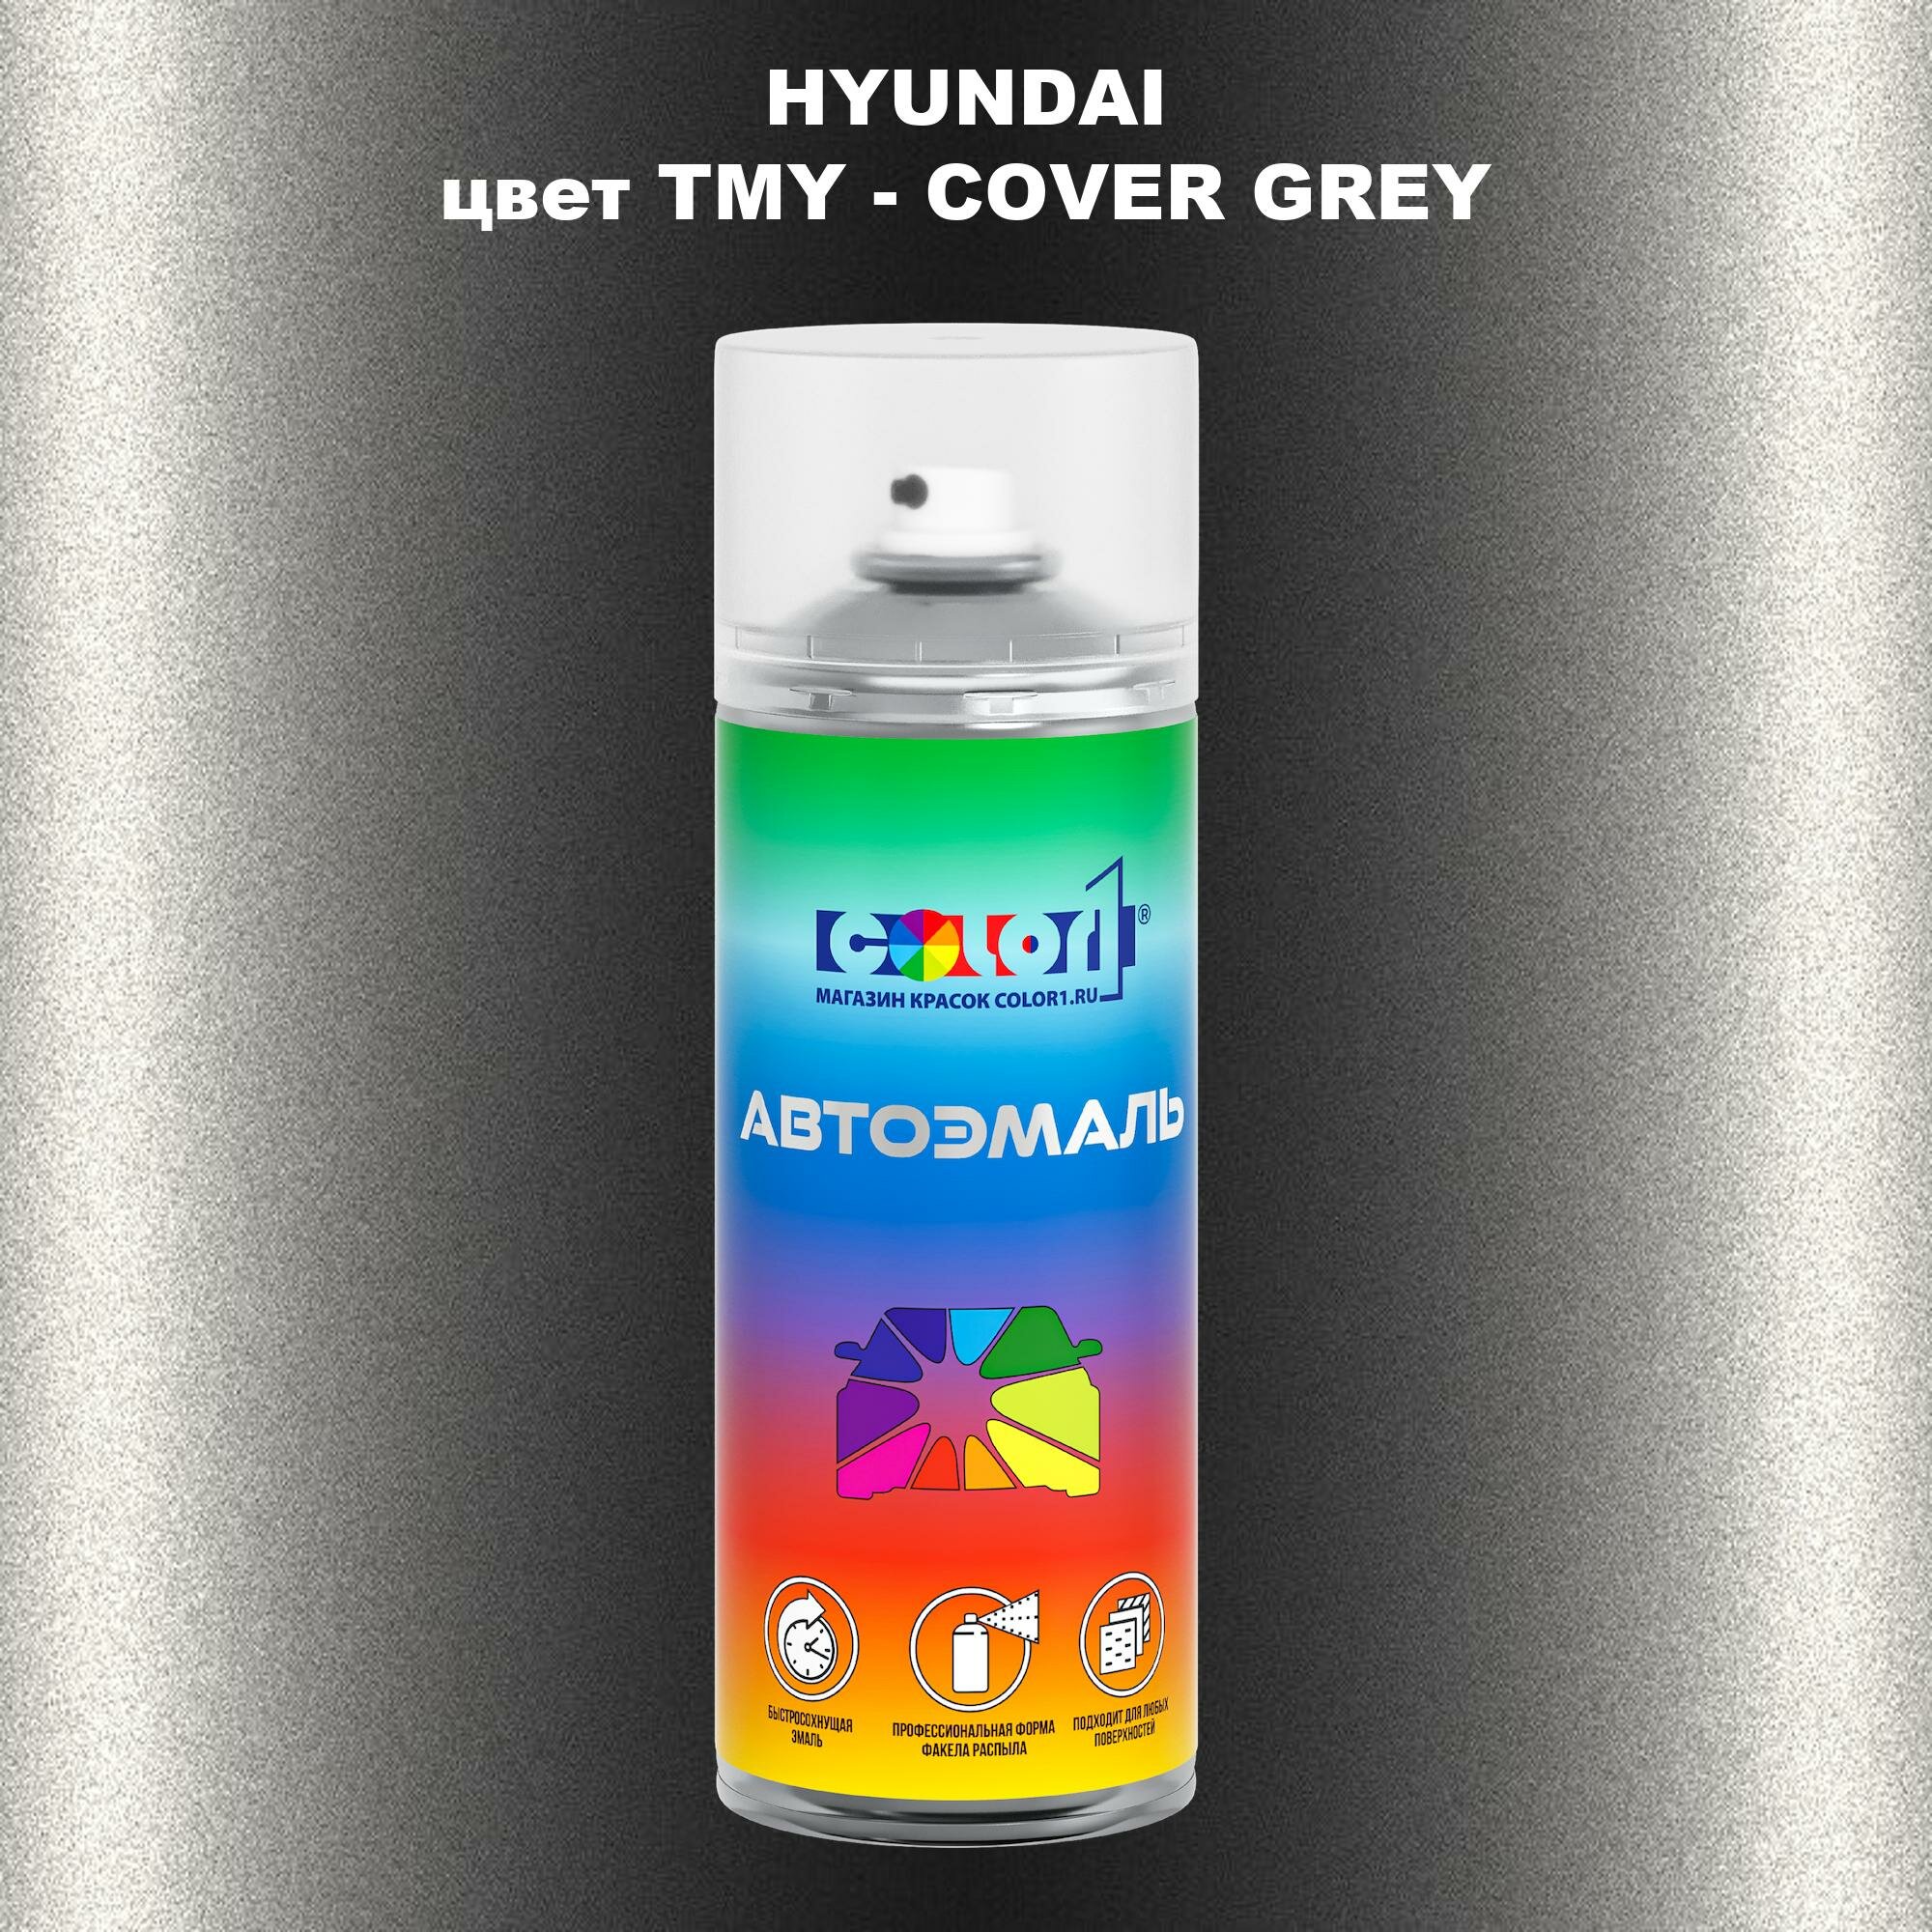 Аэрозольная краска COLOR1 для HYUNDAI, цвет TMY - COVER GREY